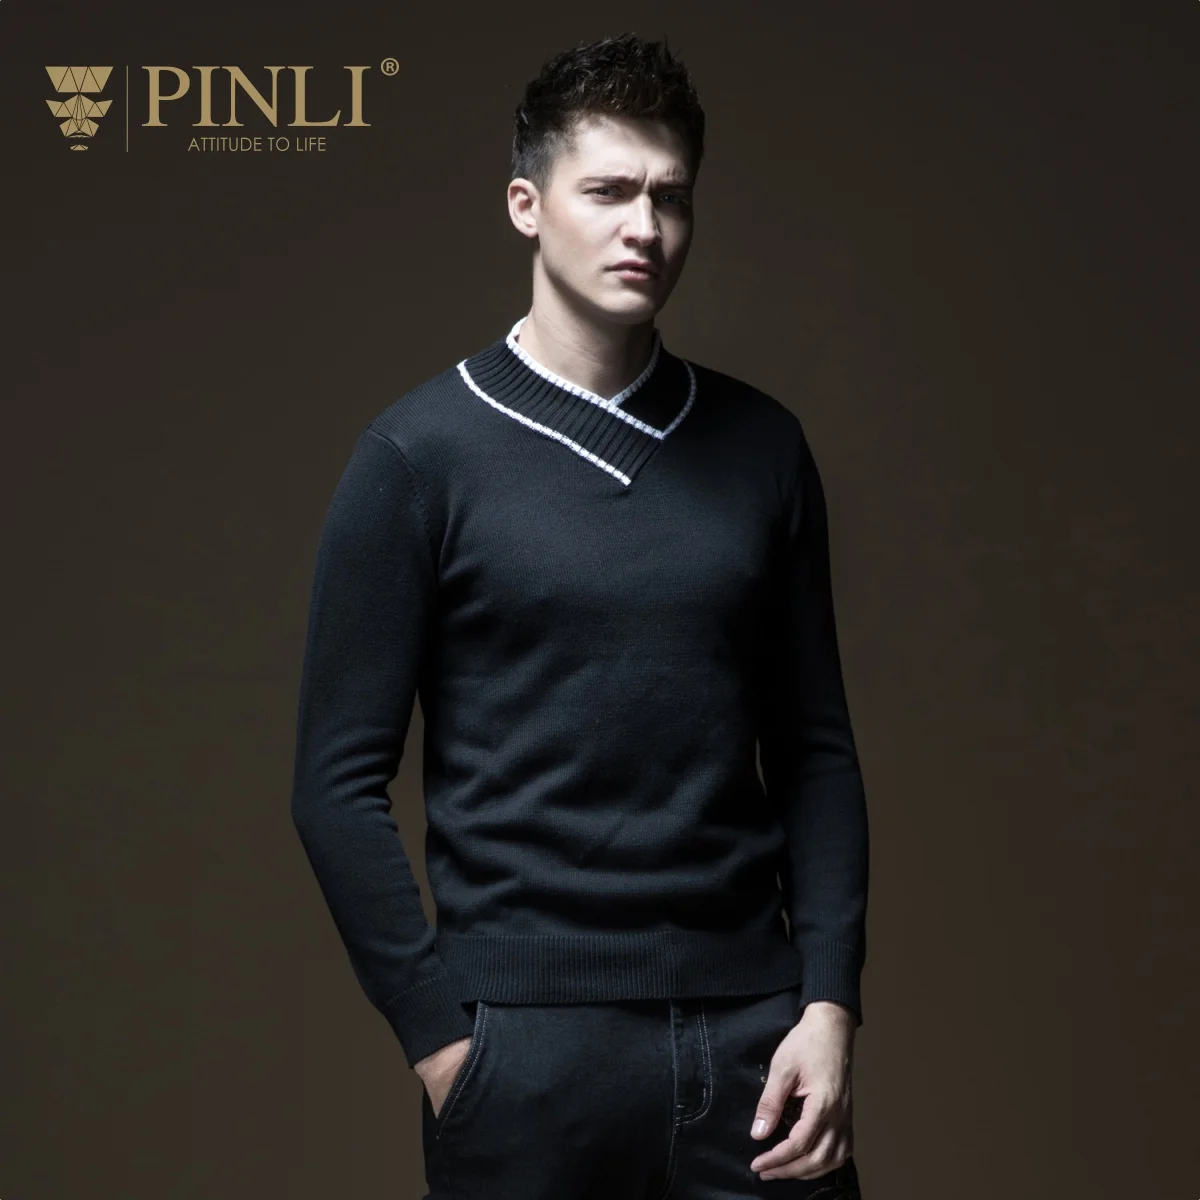 2019 реальные Eden Park Pinli продукт сделал новые осенние мужские свитера v-образным вырезом свитер B183310156 развивать нравственность досуг молодежи